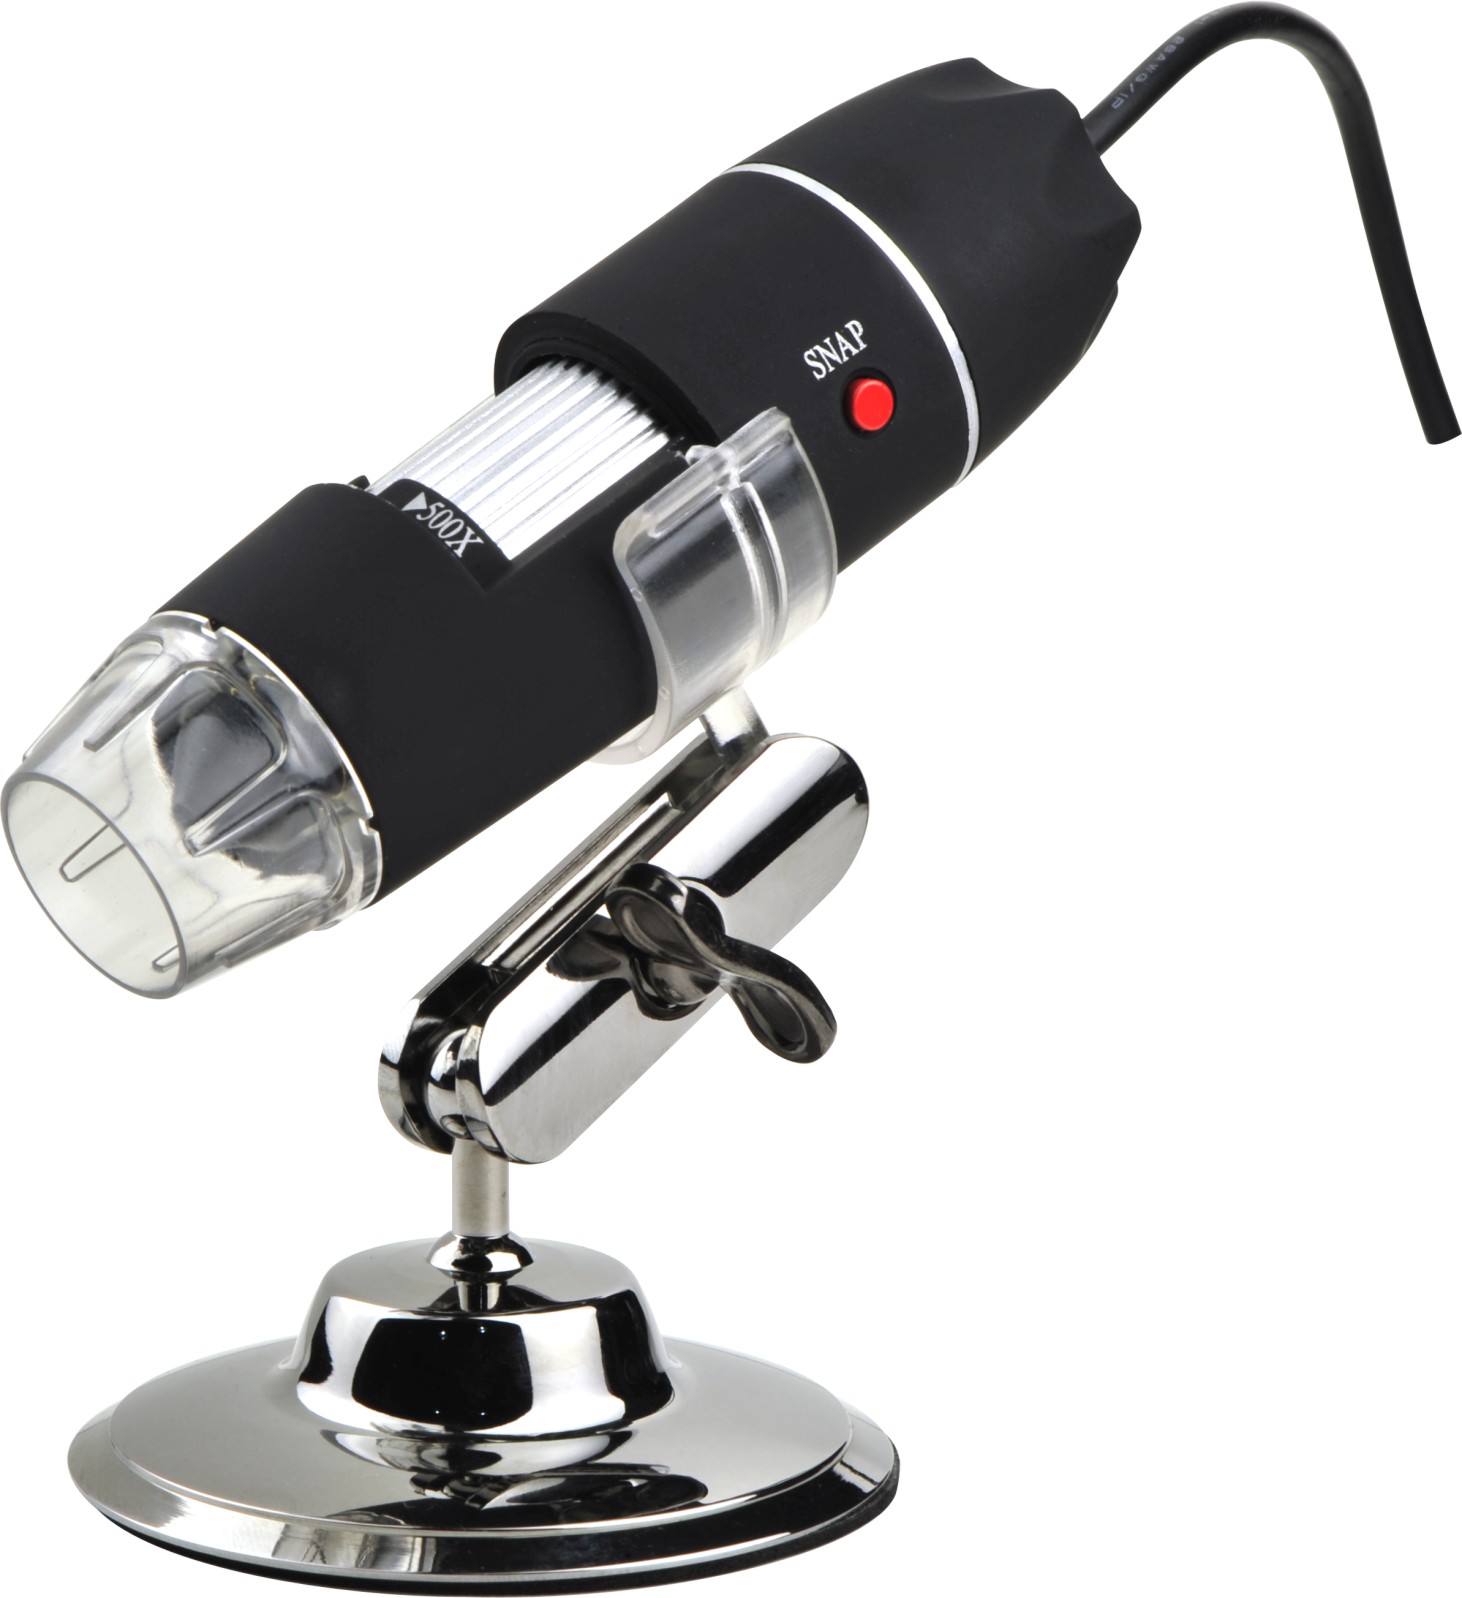 DMU-U500x Digital USB Mikroskop, Mikroskopkamera